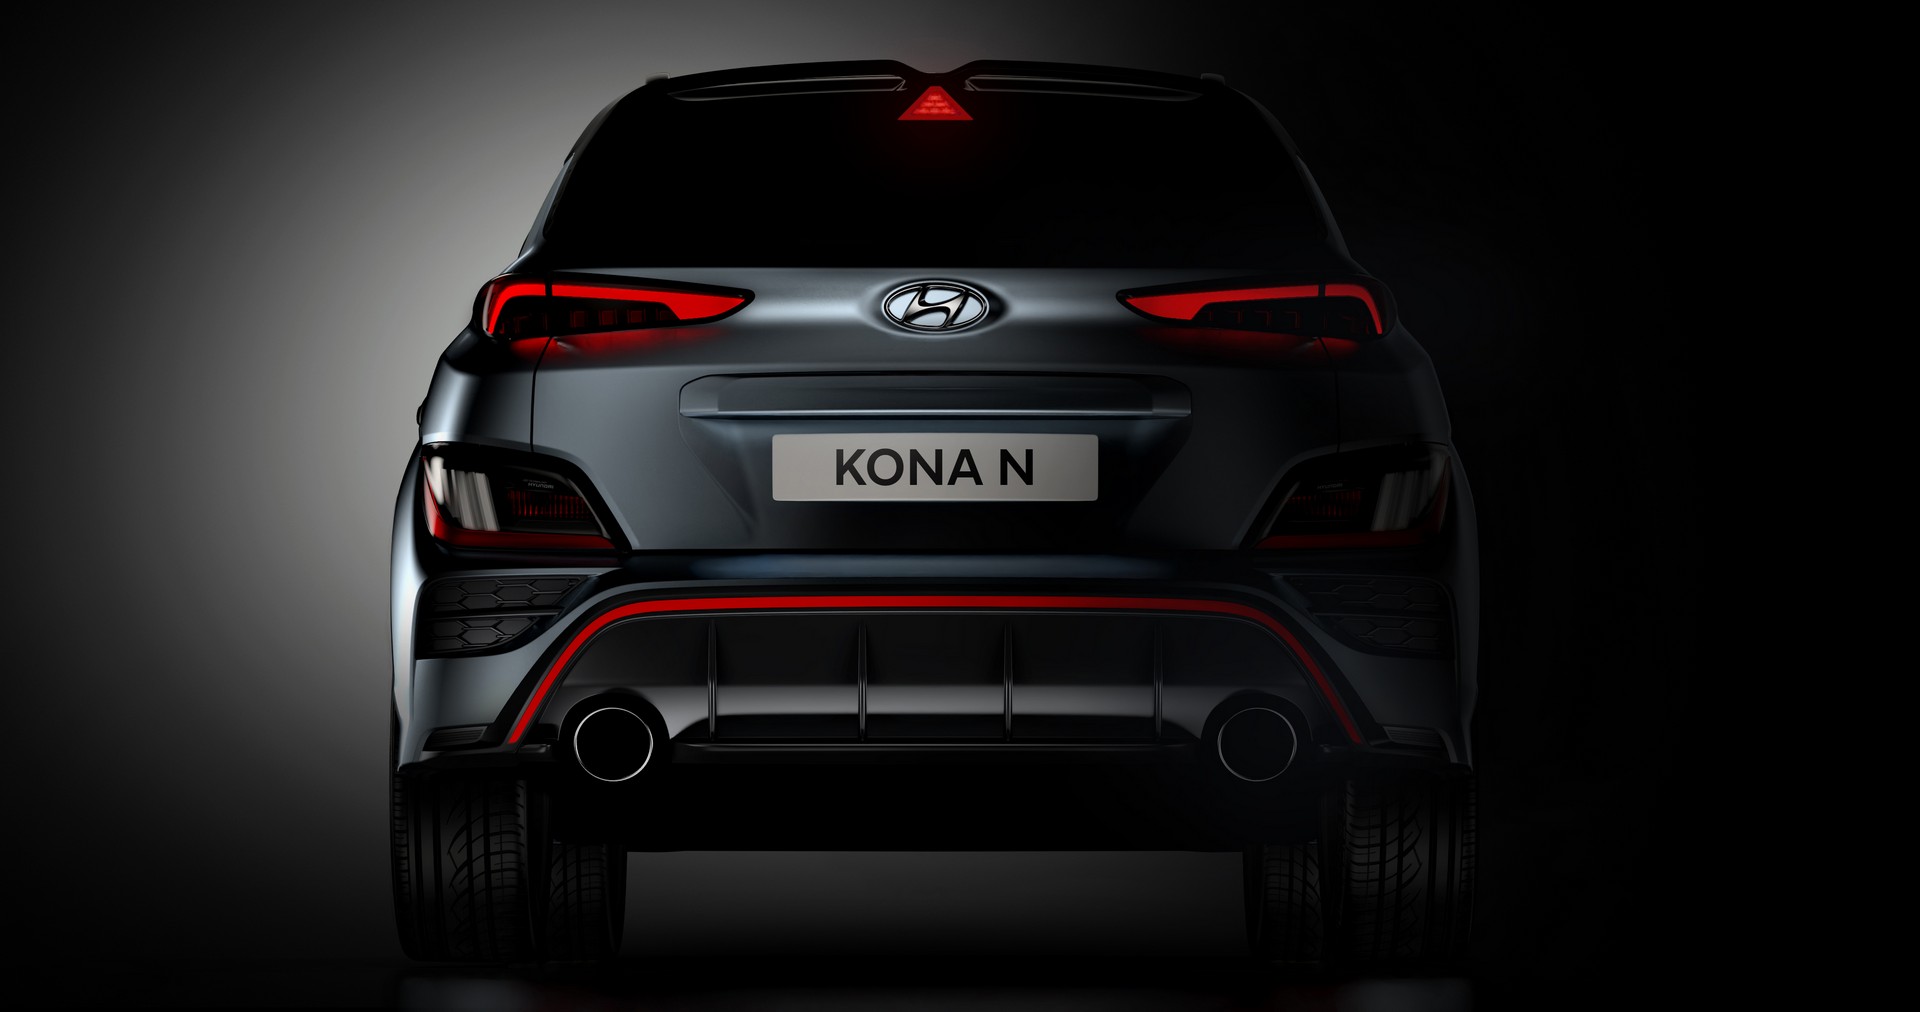 Hyundai xác nhận Kona N sắp ra mắt sẽ mạnh khoảng 276 mã lực Hyundai Kona N 2022 lộ diện với thiết kế đậm chất thể thao 2022-hyundai-kona-n-3.jpg